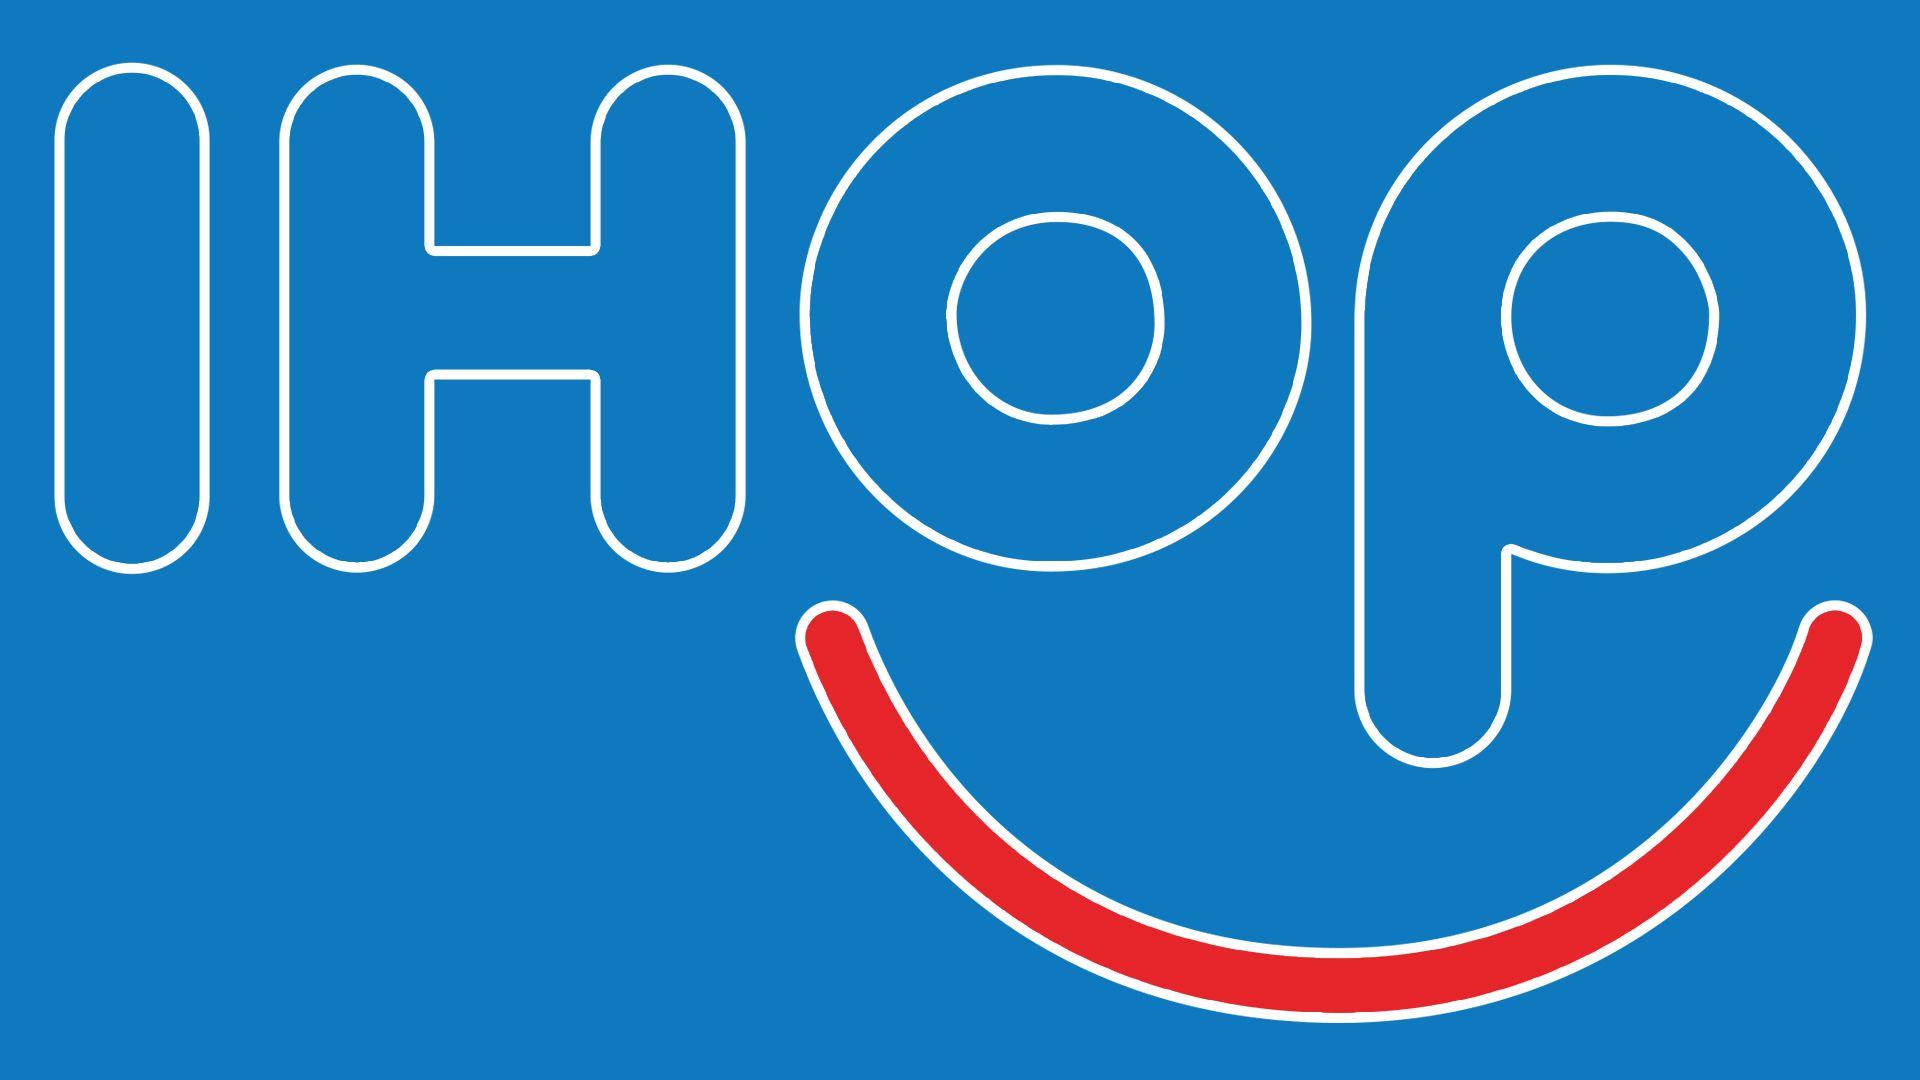 Ihop Logo - IHOP Logo, IHOP Symbol, Meaning, History and Evolution